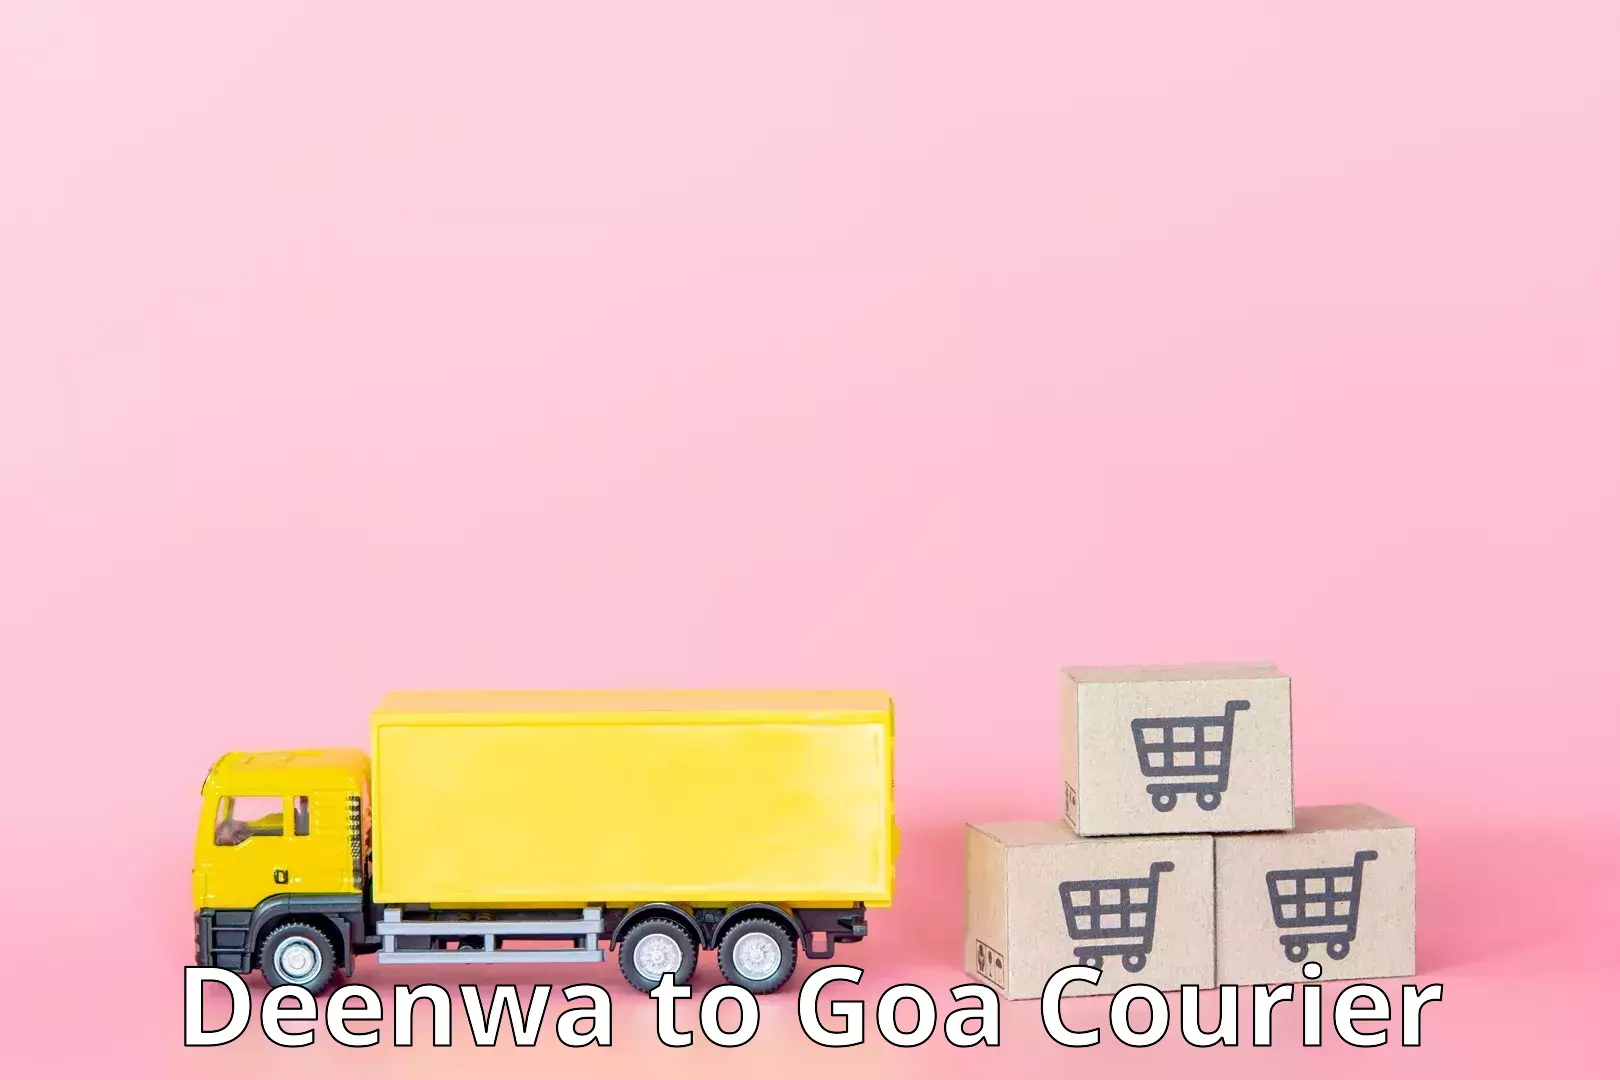 Multi-modal transport in Deenwa to NIT Goa